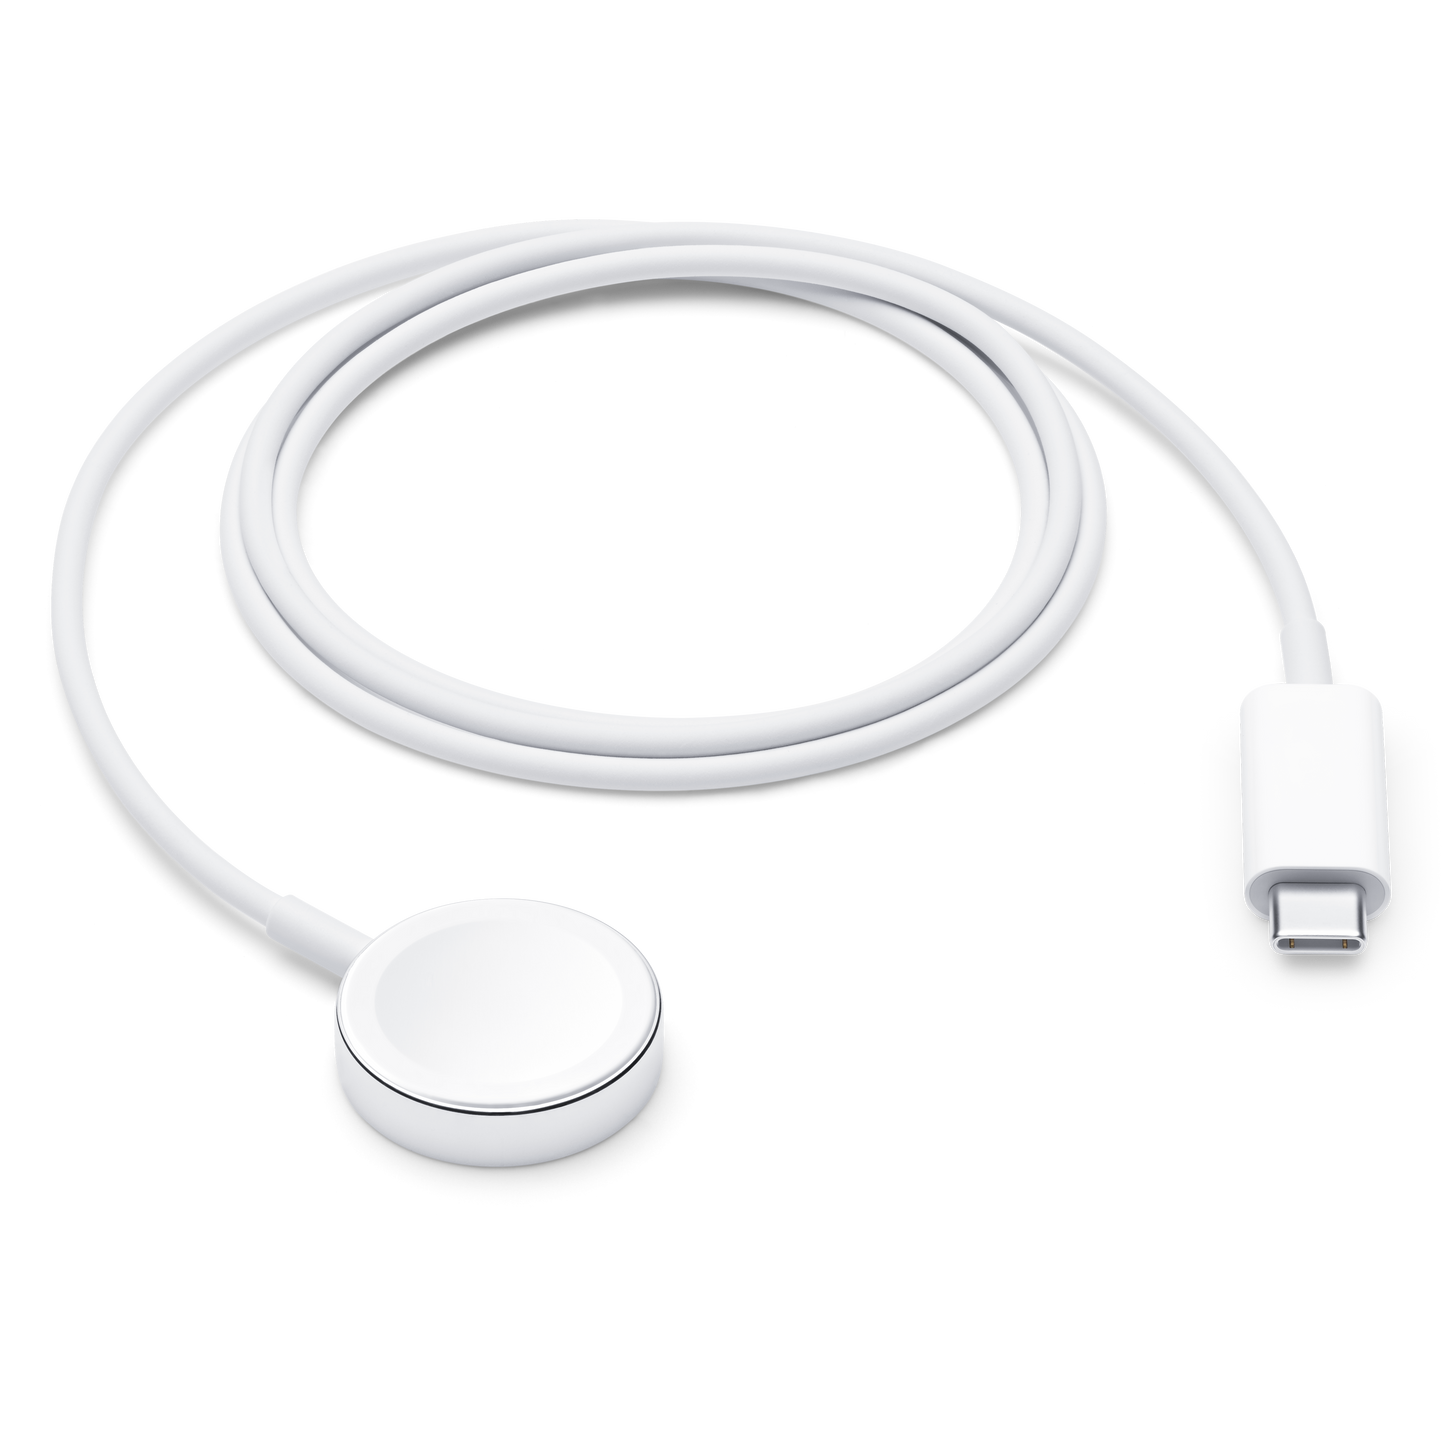 Cable de cargador 2 en 1 de Apple Watch y iPhone / iPad Cable de